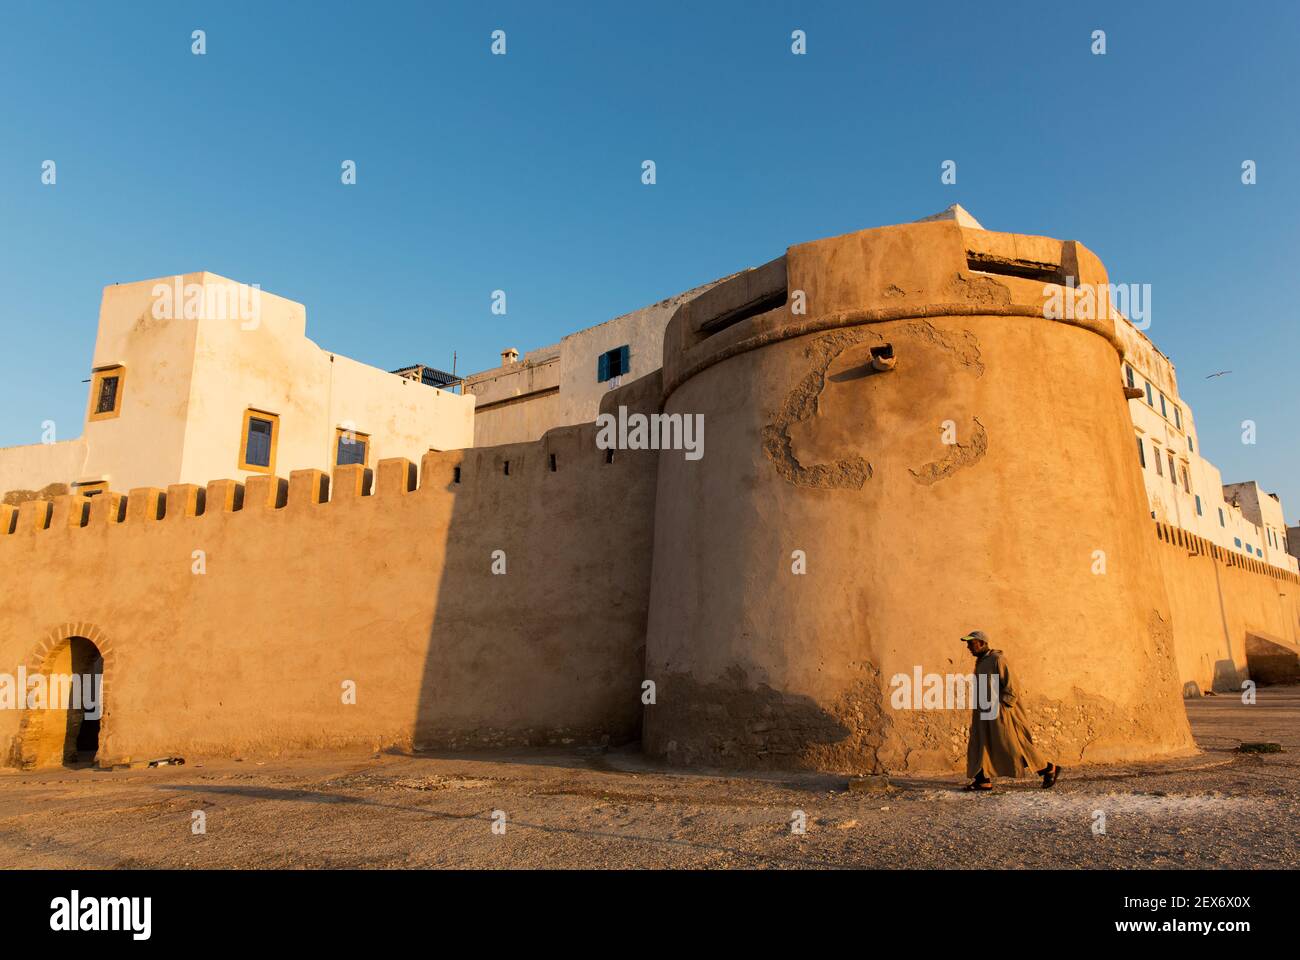 Sqala de Laville, le fortificazioni o i bastioni delle mura esterne della città progettato per dare protezione dagli attacchi navali. Foto Stock